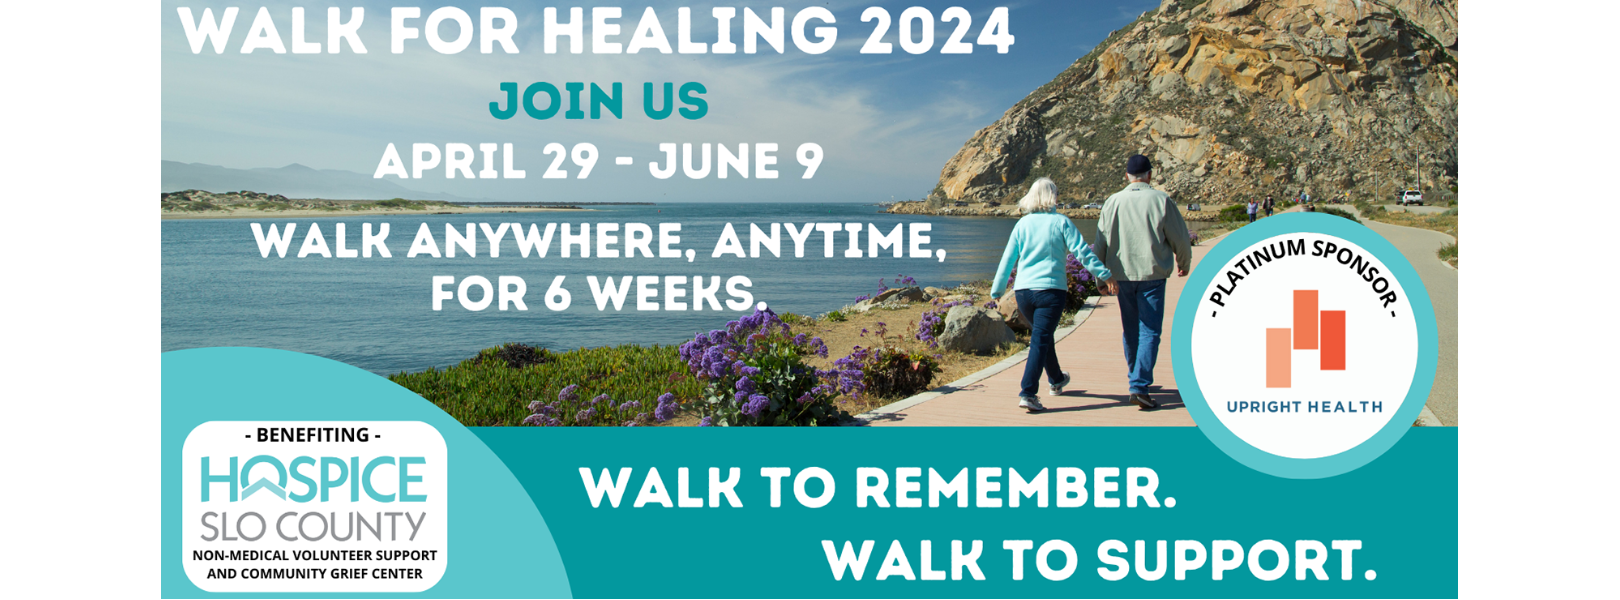 WALK FOR HEALING 2024